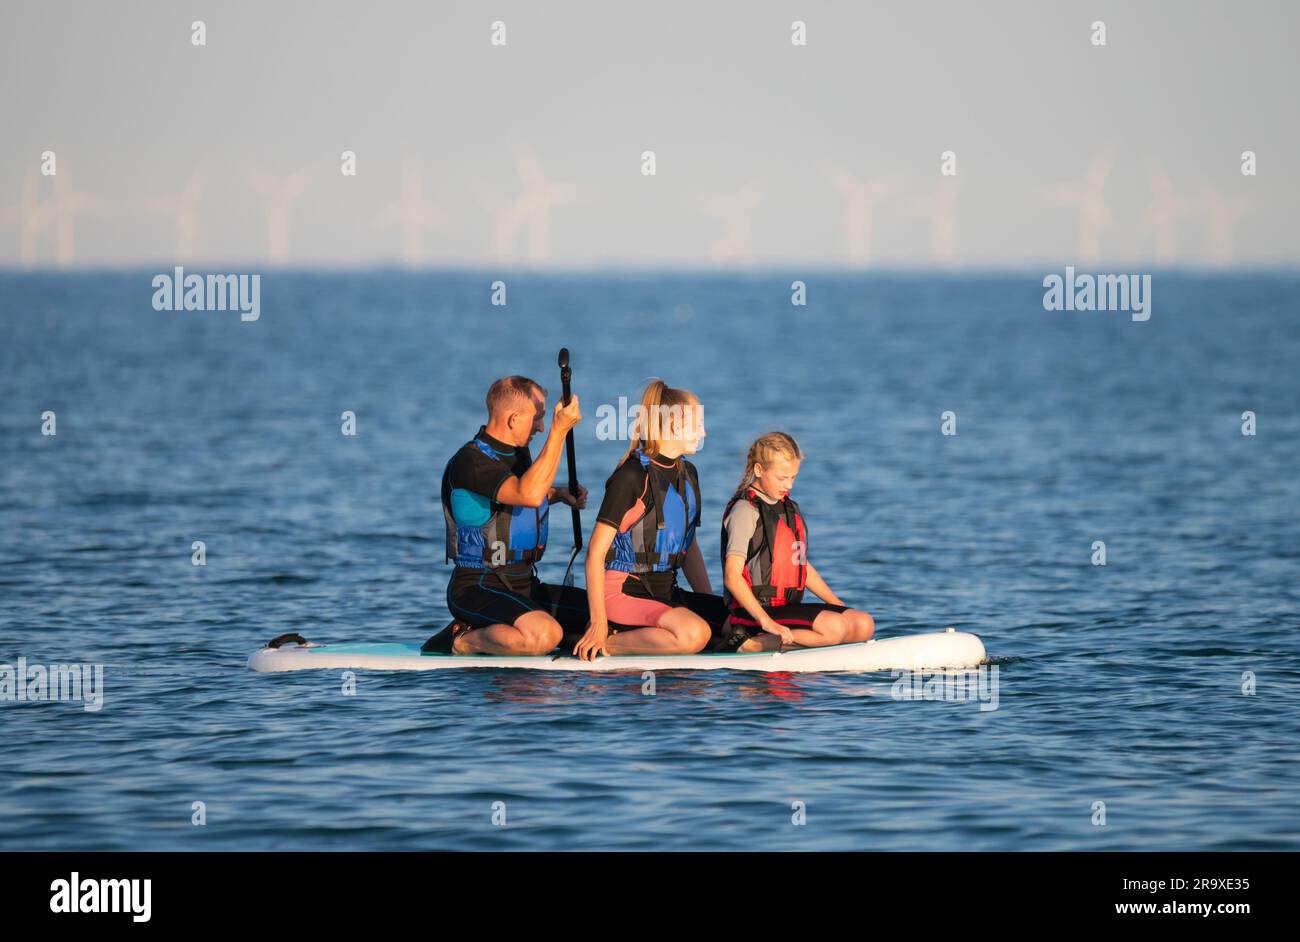 Männlicher Erwachsener mit 2 jüngeren Frauen (möglicherweise eine Familie) auf einem Paddleboard auf dem Meer, sitzt während des Paddelns an einem heißen Sommertag in England, Großbritannien. Stockfoto